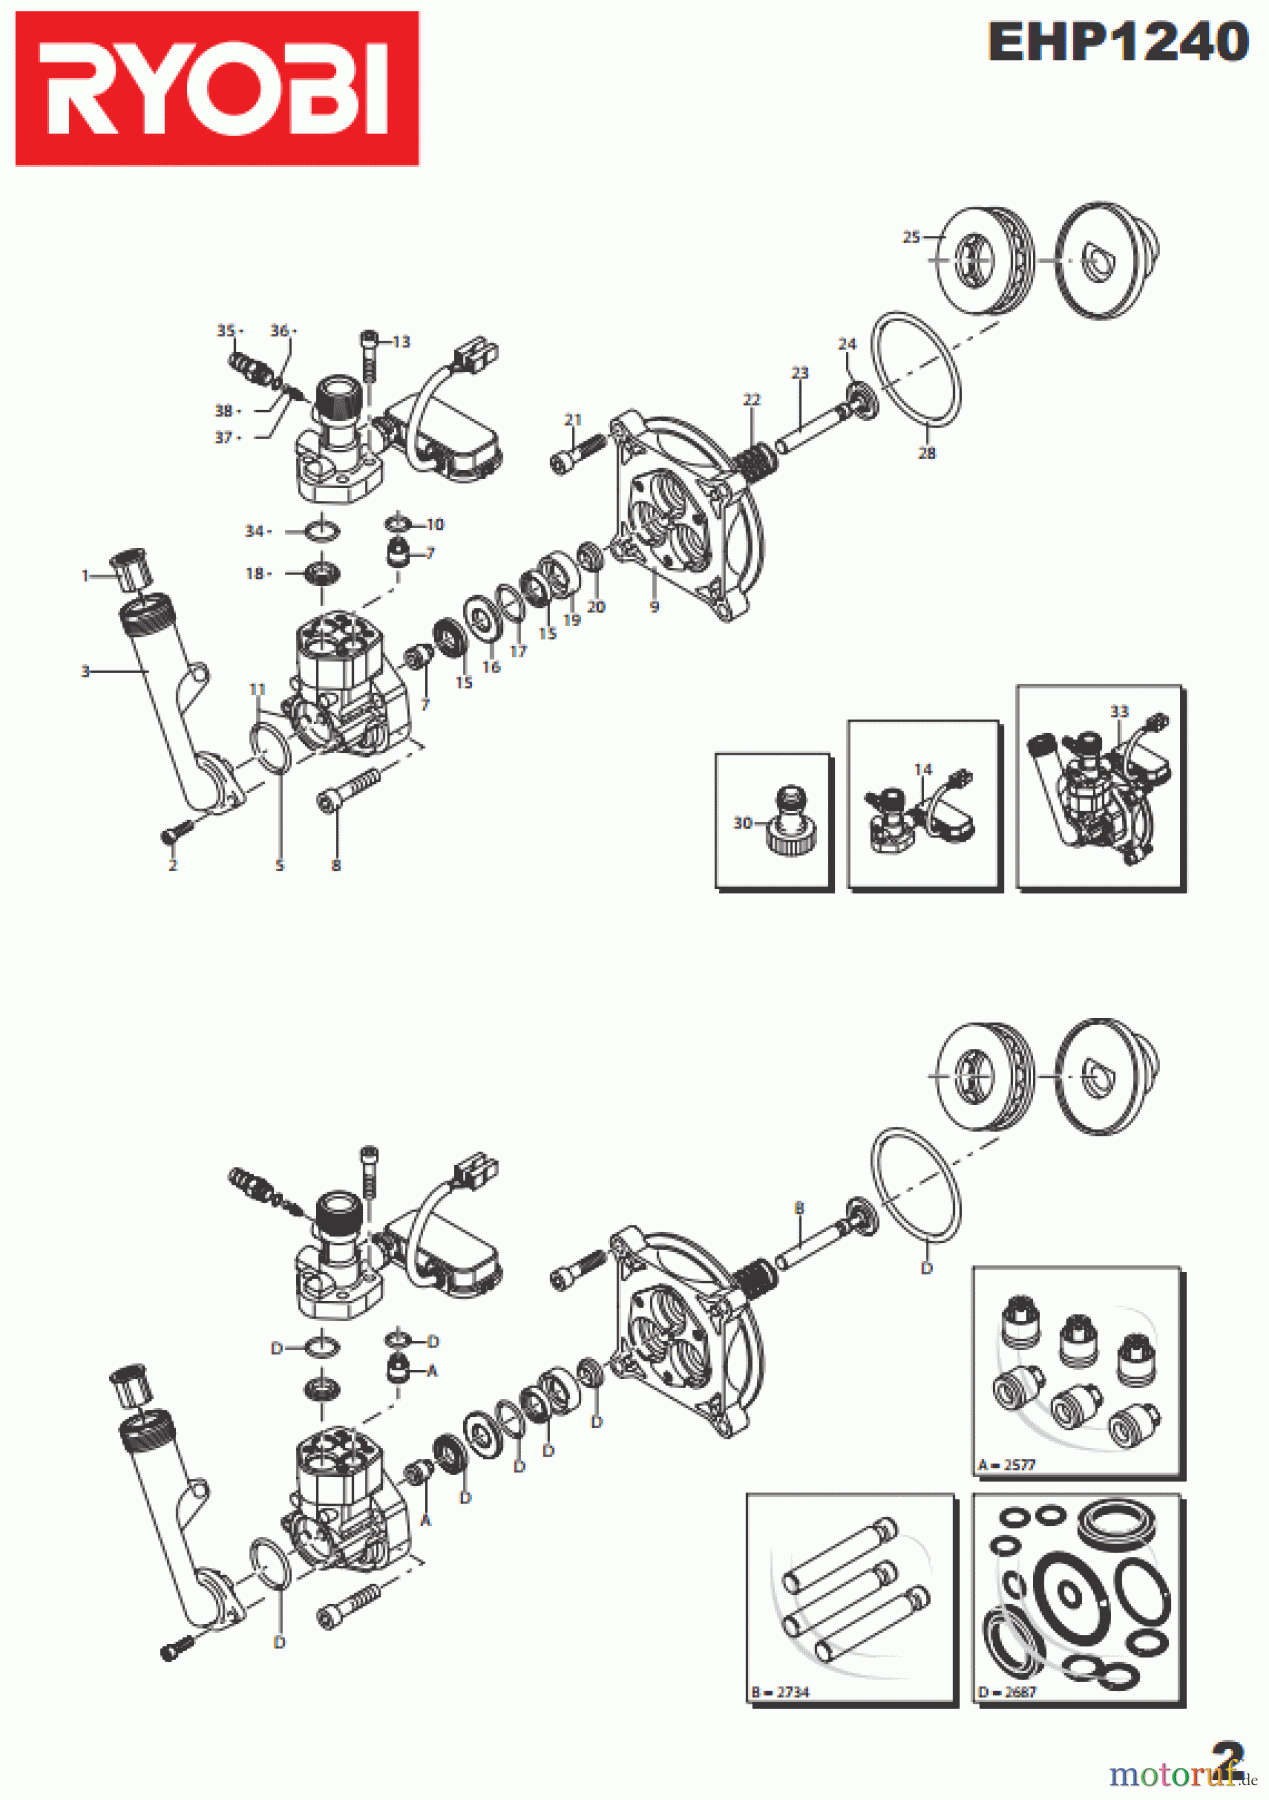  Ryobi Hochdruckreiniger EHP1240 Seite 2